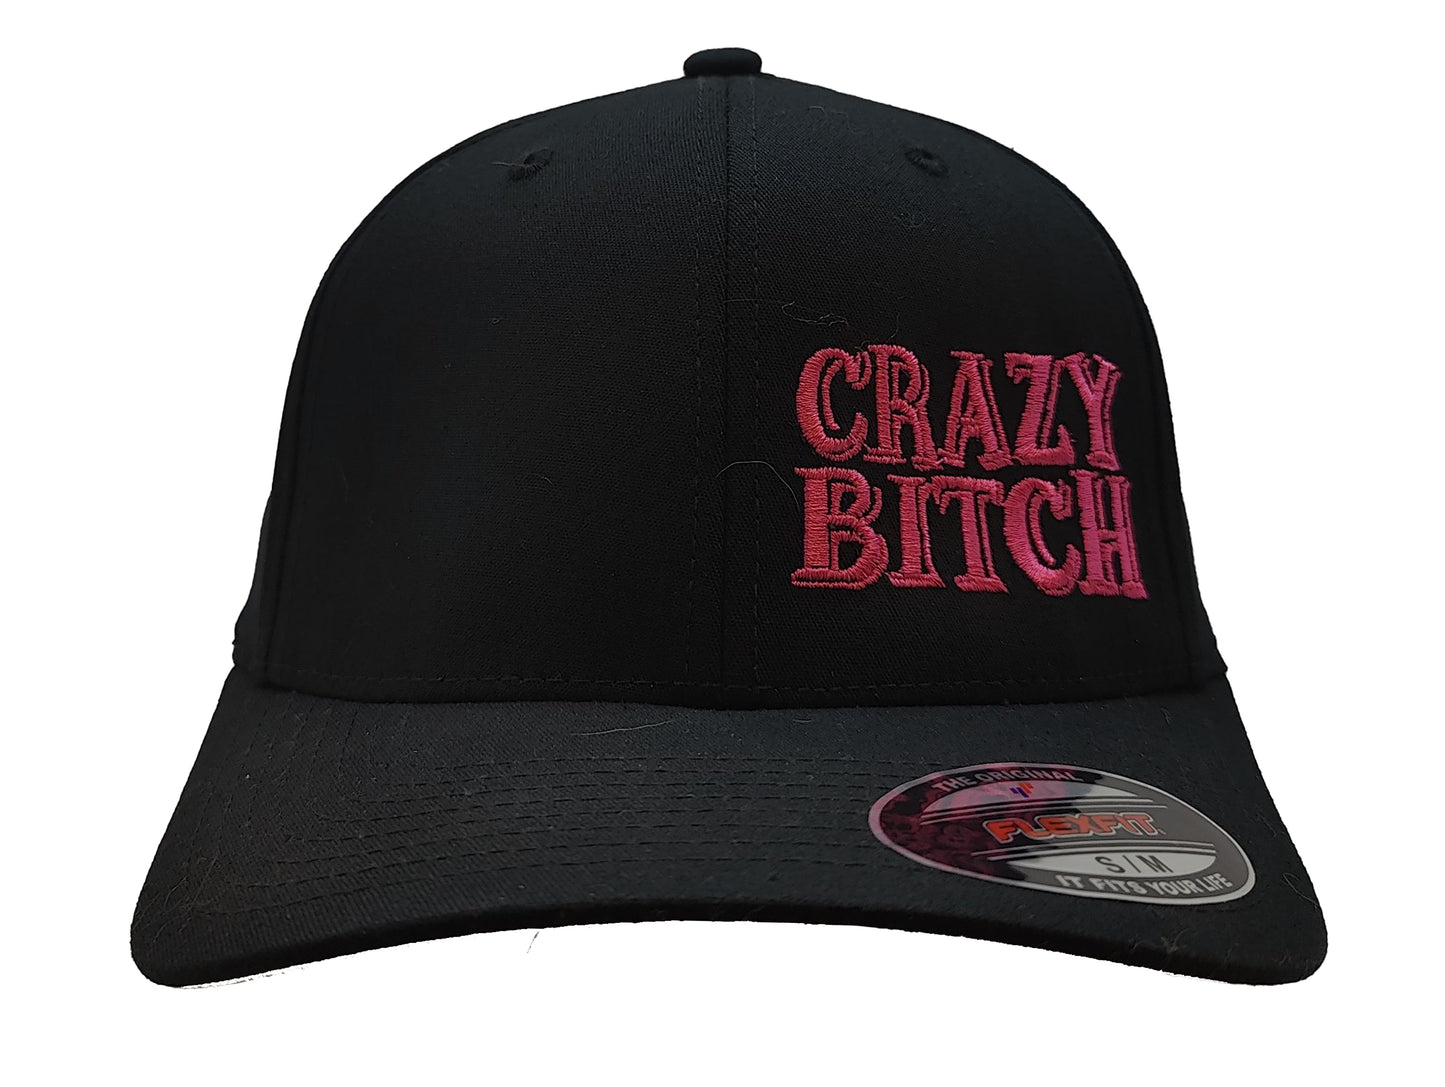 CRAZY BITCH FlexFit Adult Hat Black / Pink